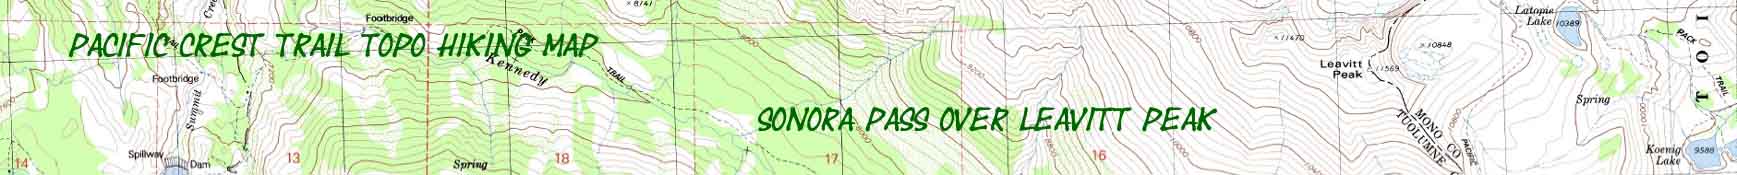 Topo hiking map from Sonora Pass over Leavitt Peak.